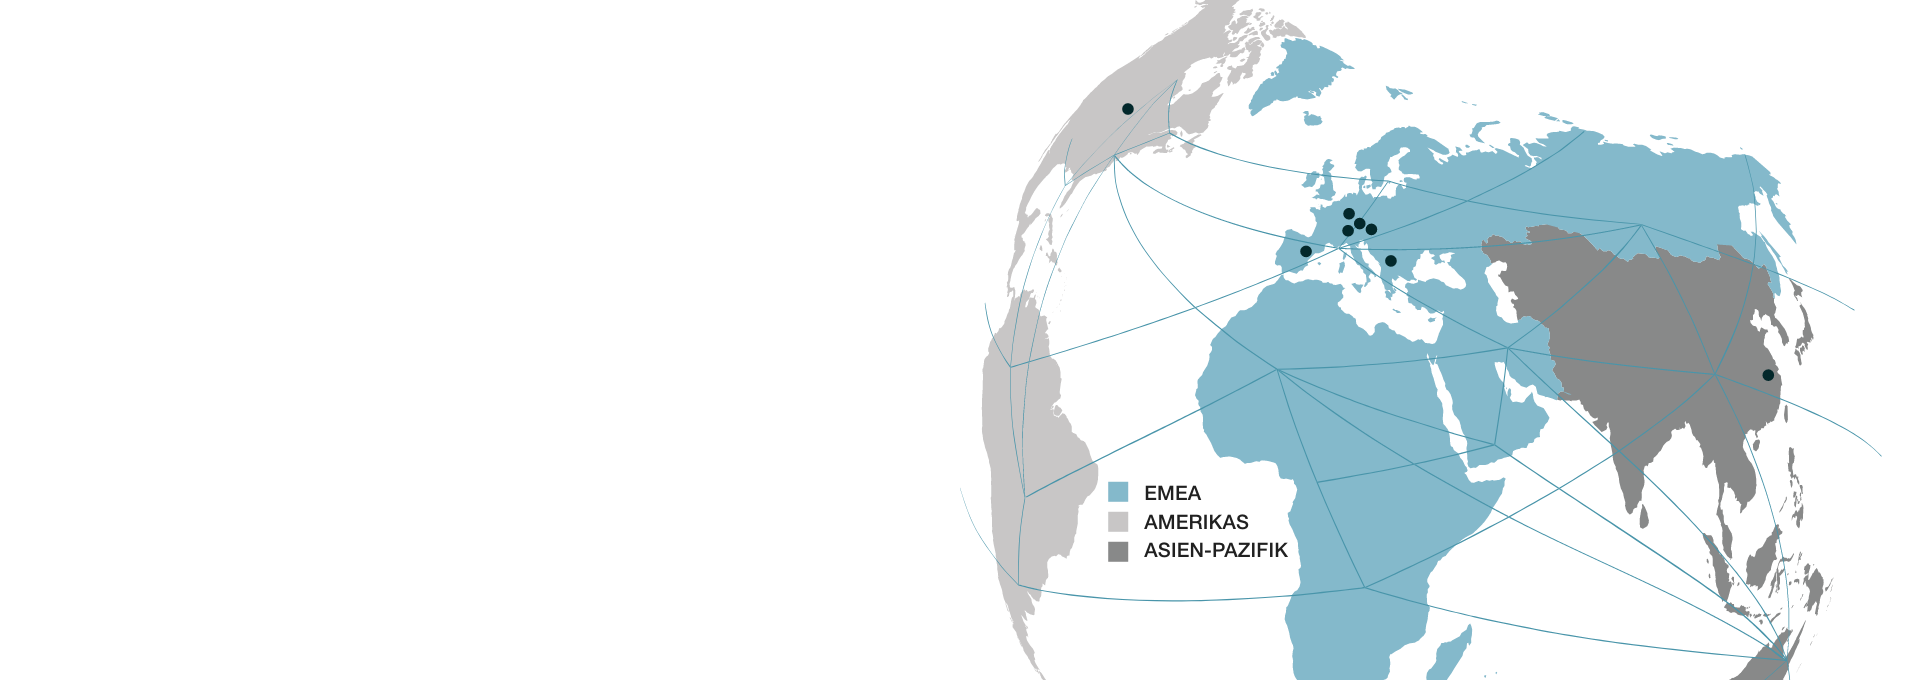 Standorte der Wacker Neuson Group markiert auf einer Weltkarte.